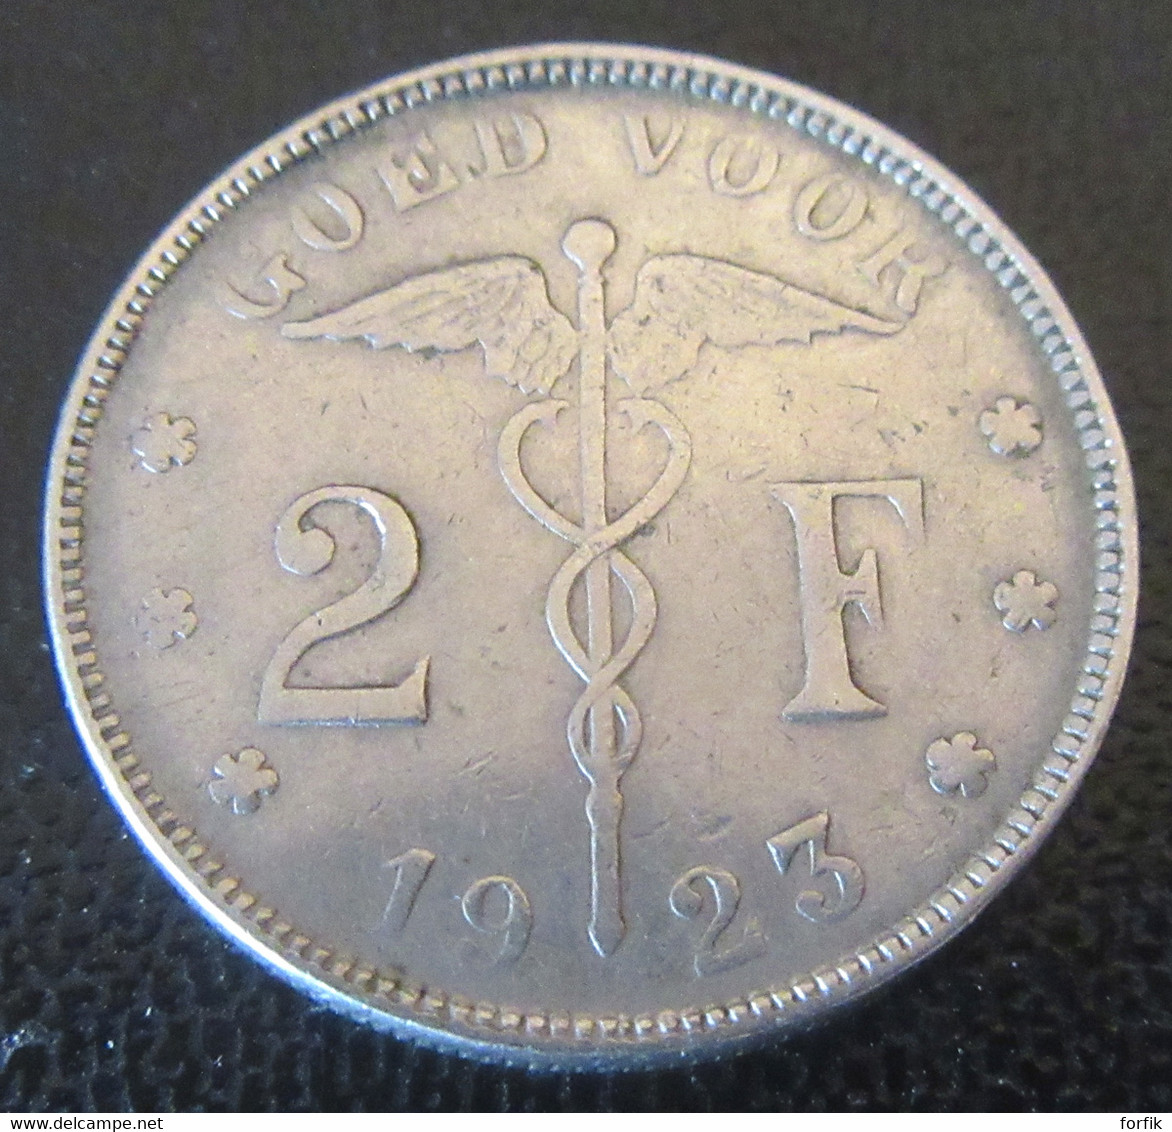 Belgique - Monnaie Bon Pour 2 Francs (Goed Voor 2 F) 1923 - Légende En Néerlandais - 2 Francs